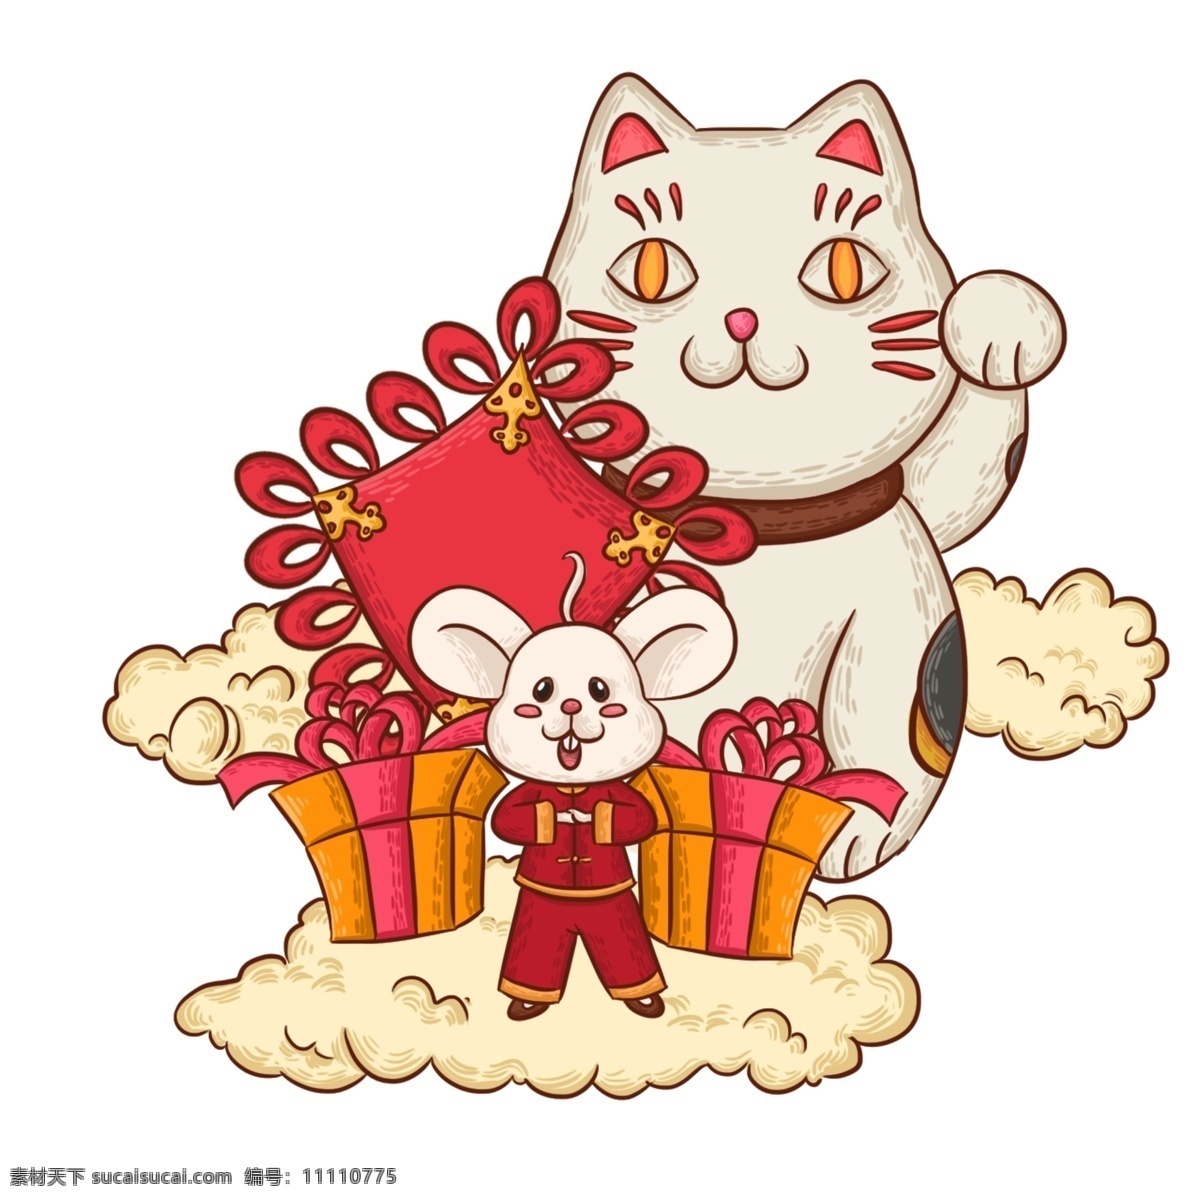 商用 手绘 卡通 鼠年 元素 福气 拜年 招财猫 可爱 喜庆 中国结 老鼠 装饰图案